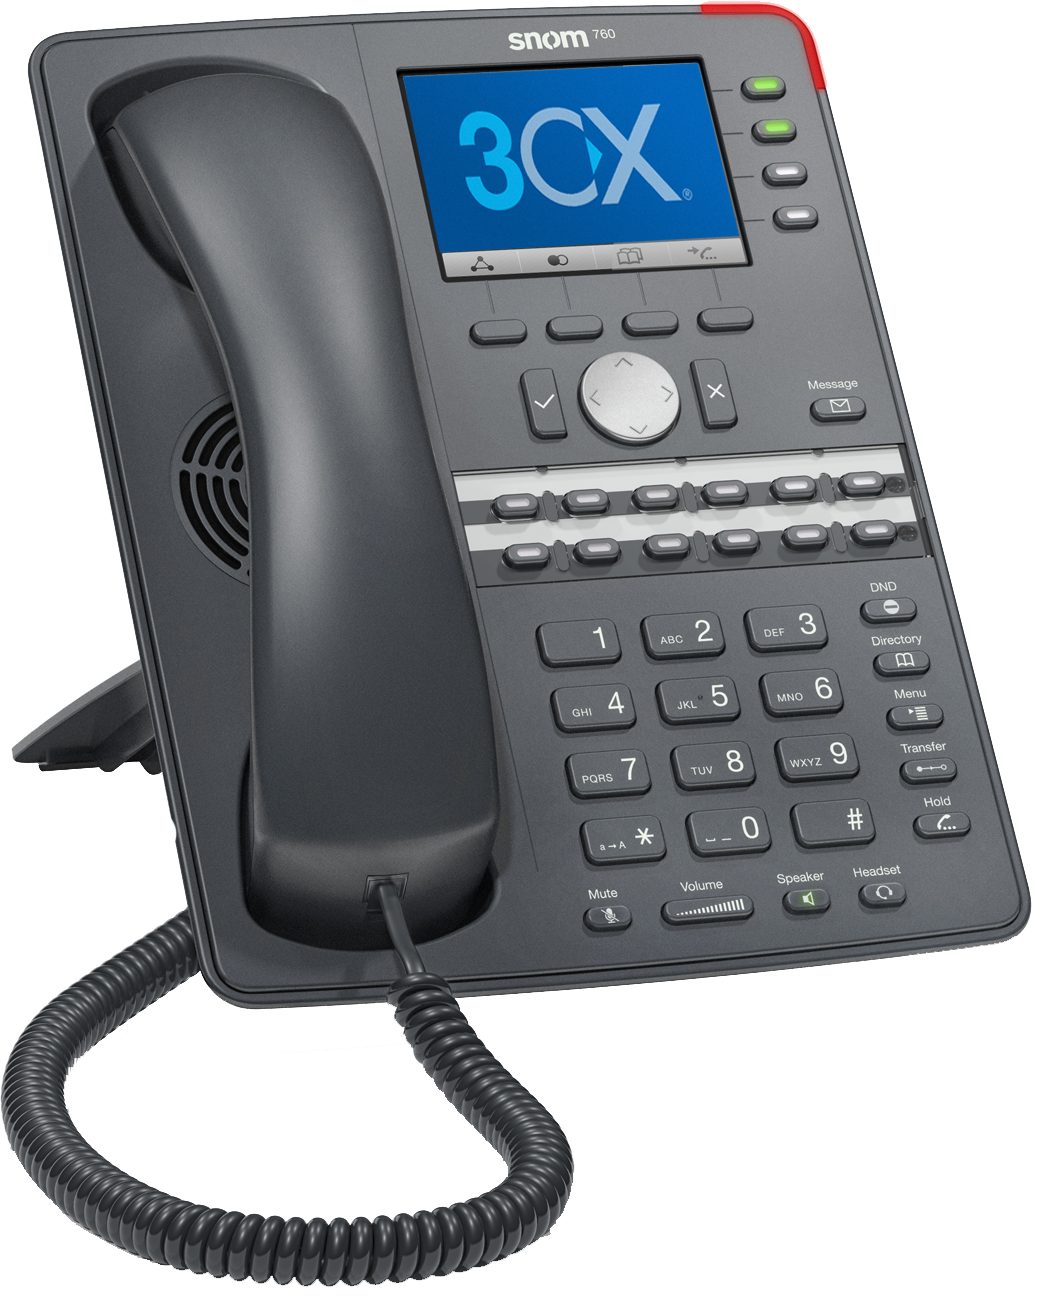 3CX-Telefonanlage